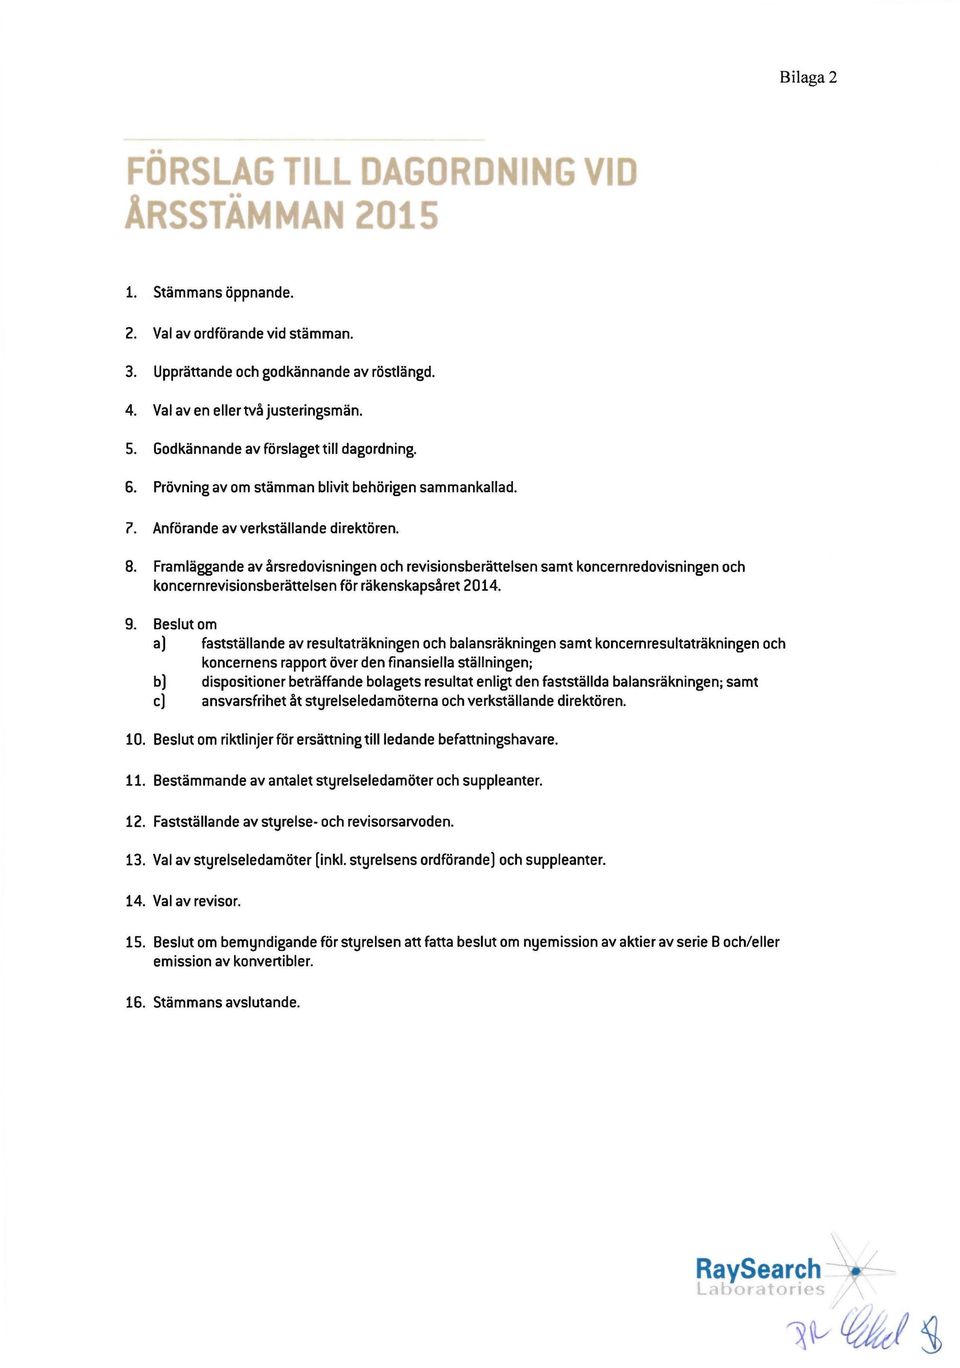 Framlaggande av arsredovisningen och revisionsberattelsen samt koncernredovisningen och koncernrevisionsberattelsen for rakenskapsaret 2014. 9.